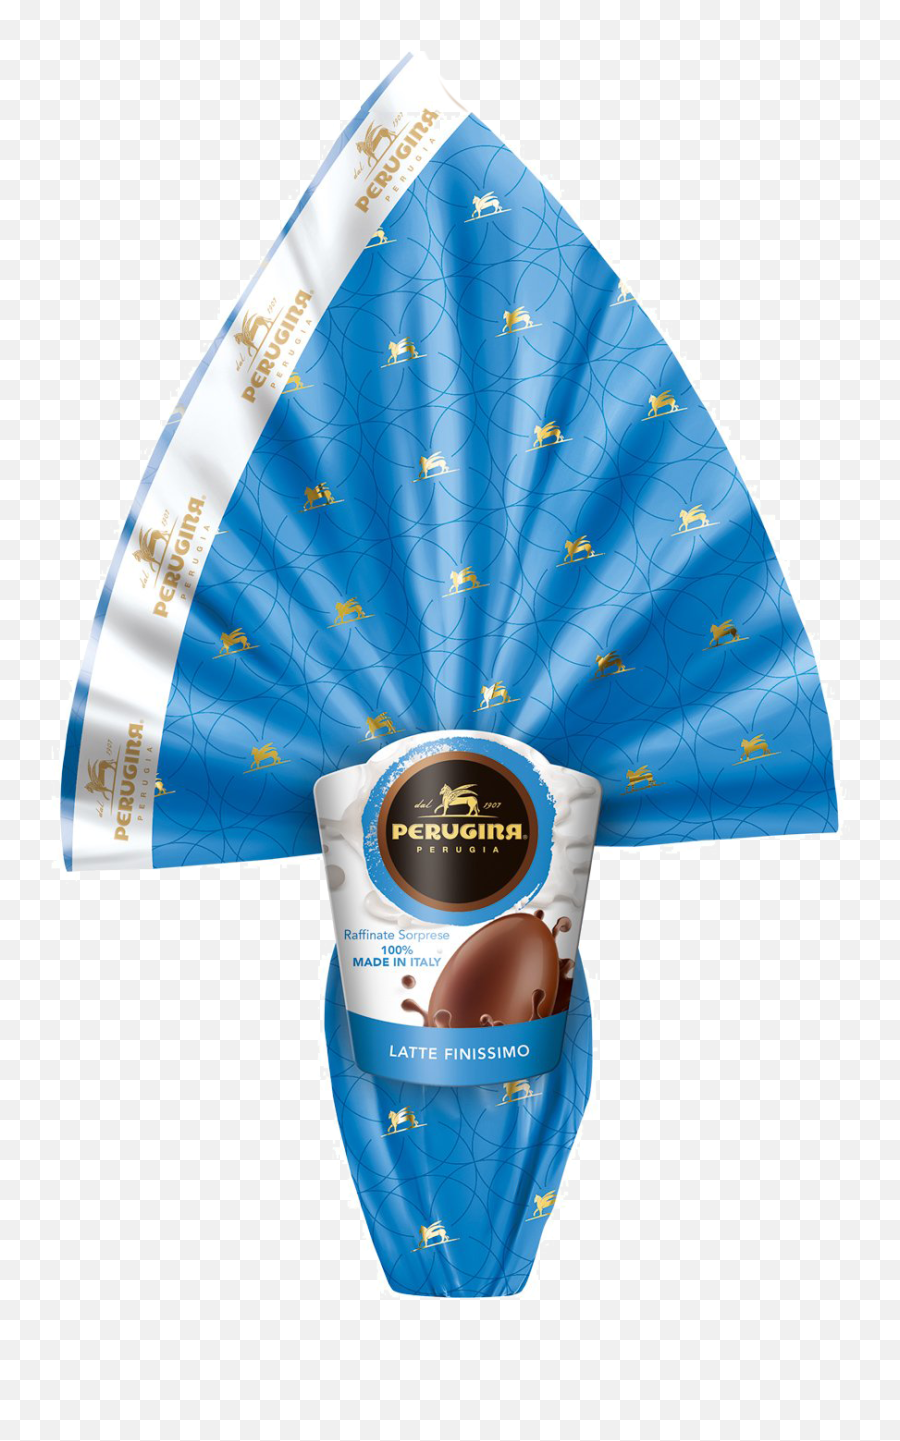 Original Perugina Milk Chocolate Easter Egg Italian Import Emoji,Emotions At Easter